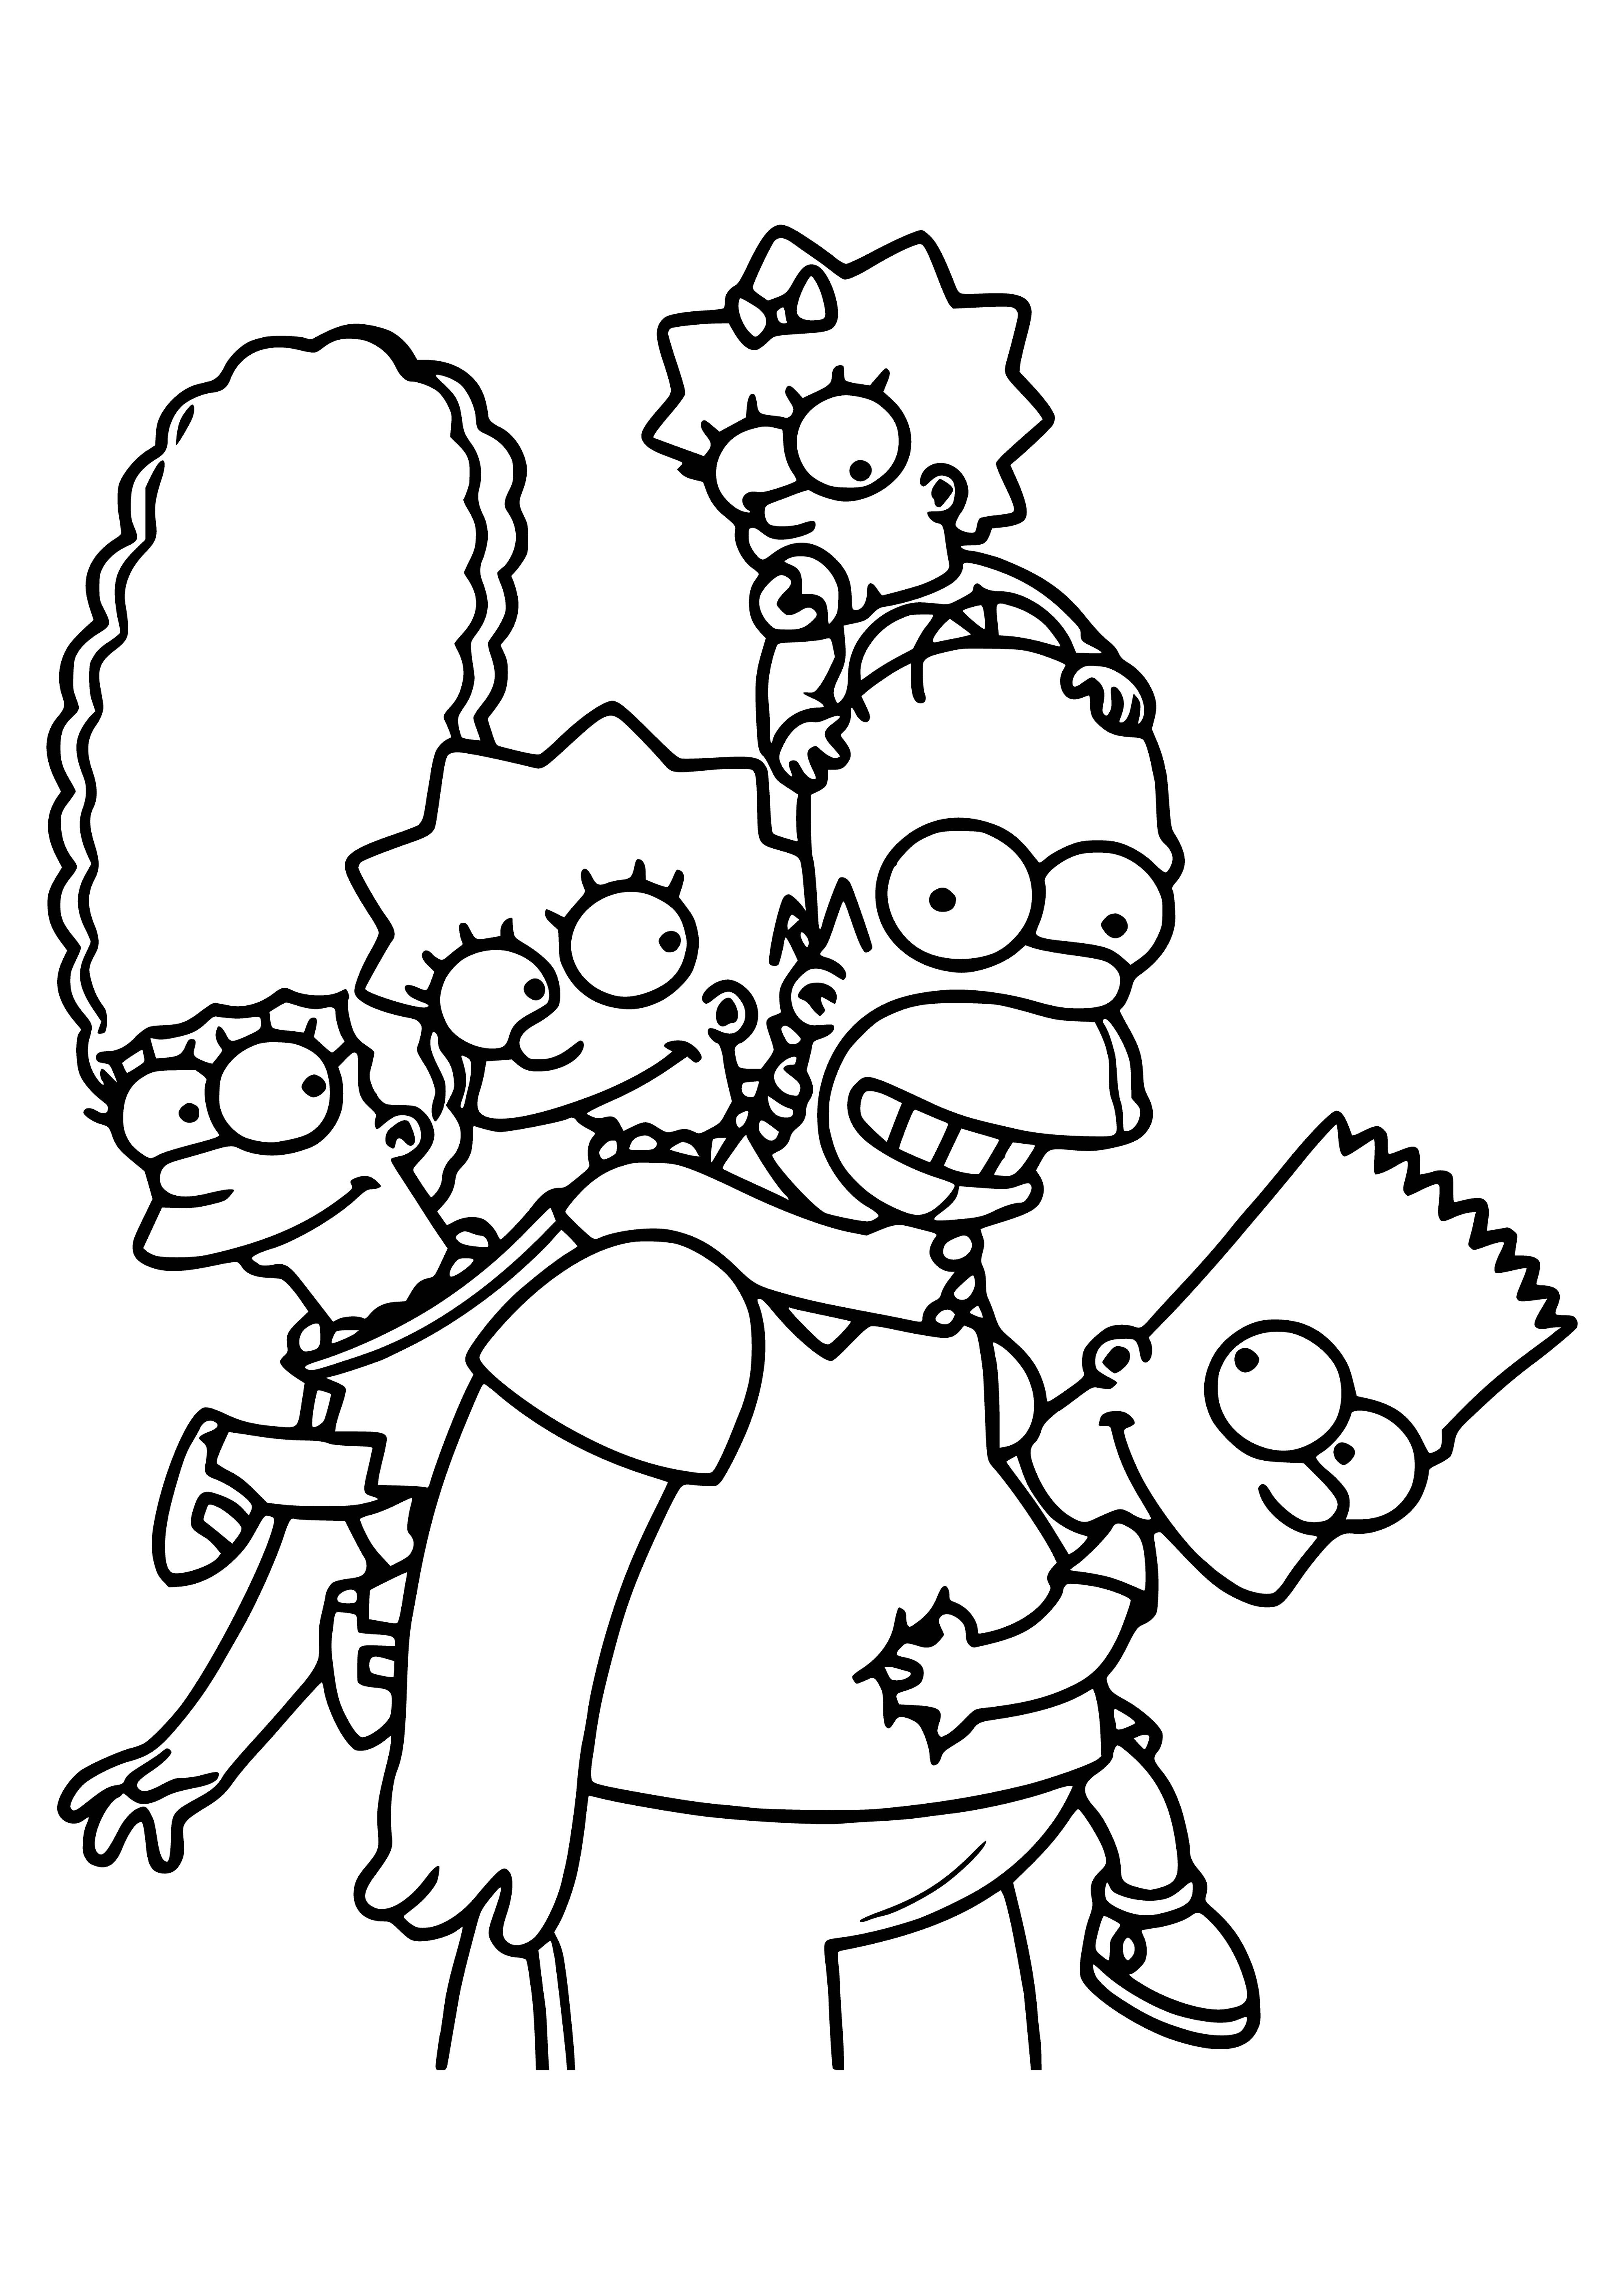 La famille Simpson coloriage